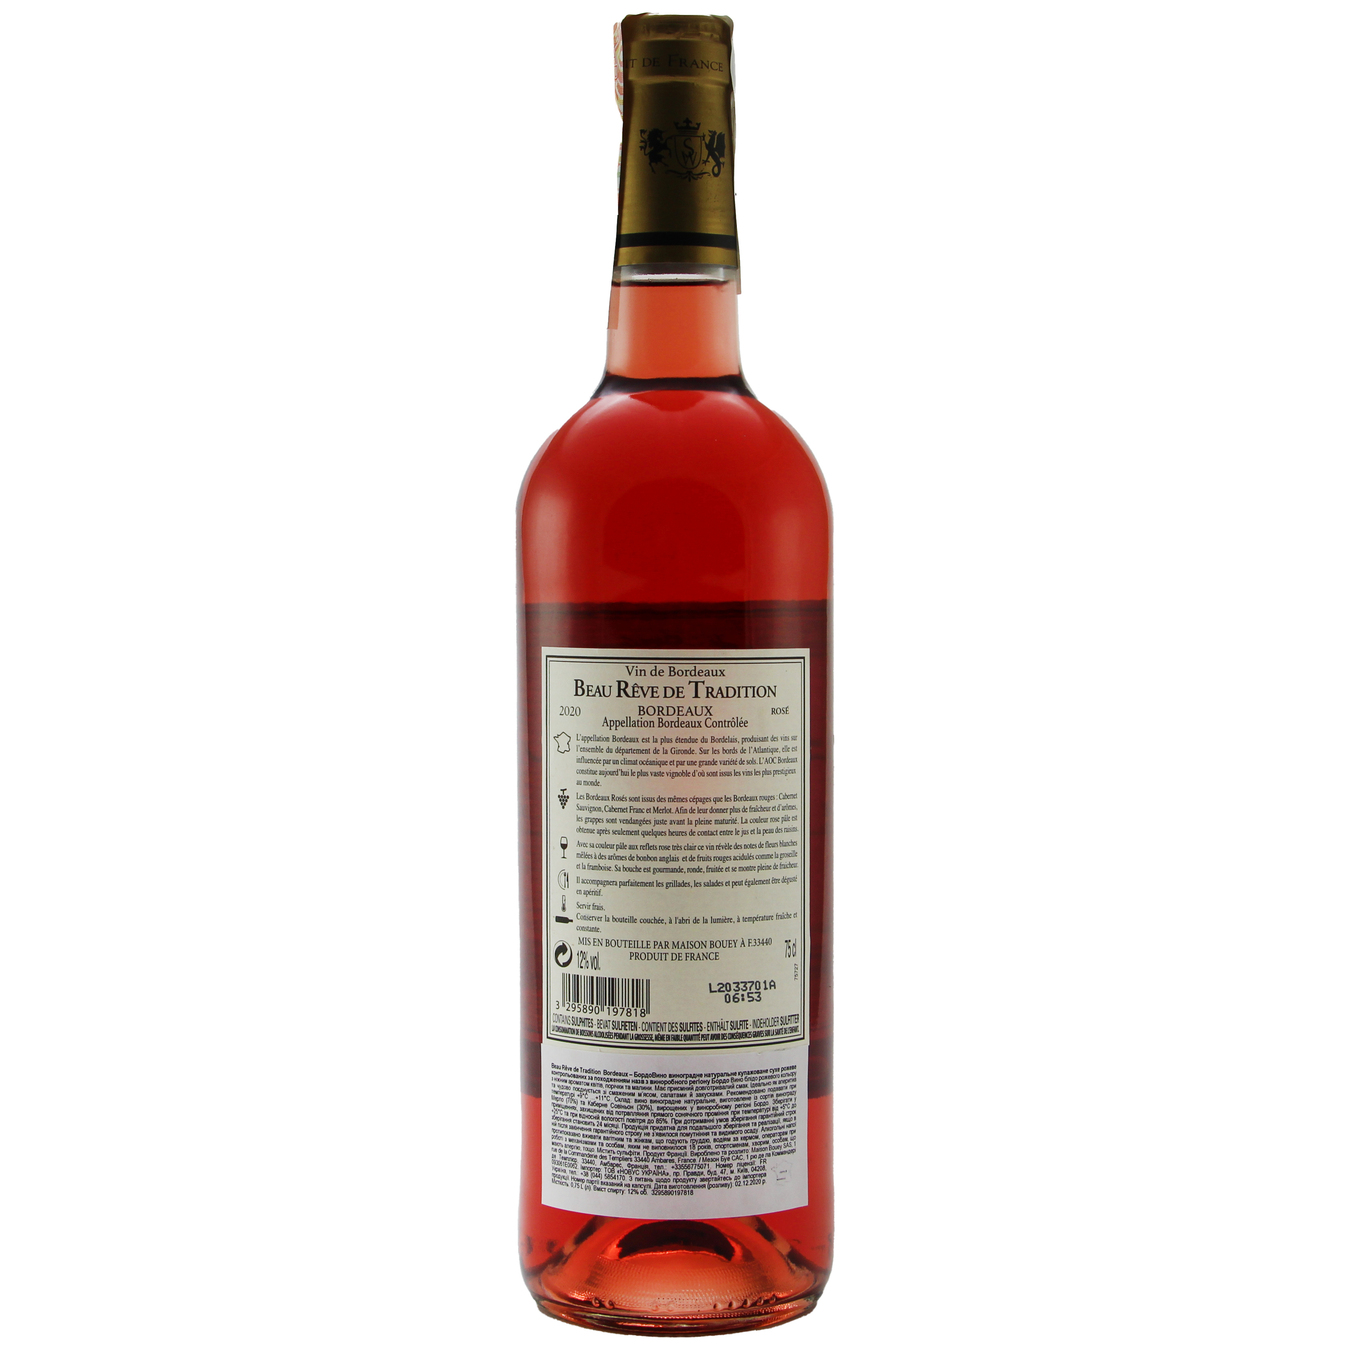 Вино Beau Reve de Tradition Rose Bordeaux розовое сухое 12,5% 0,75л 2